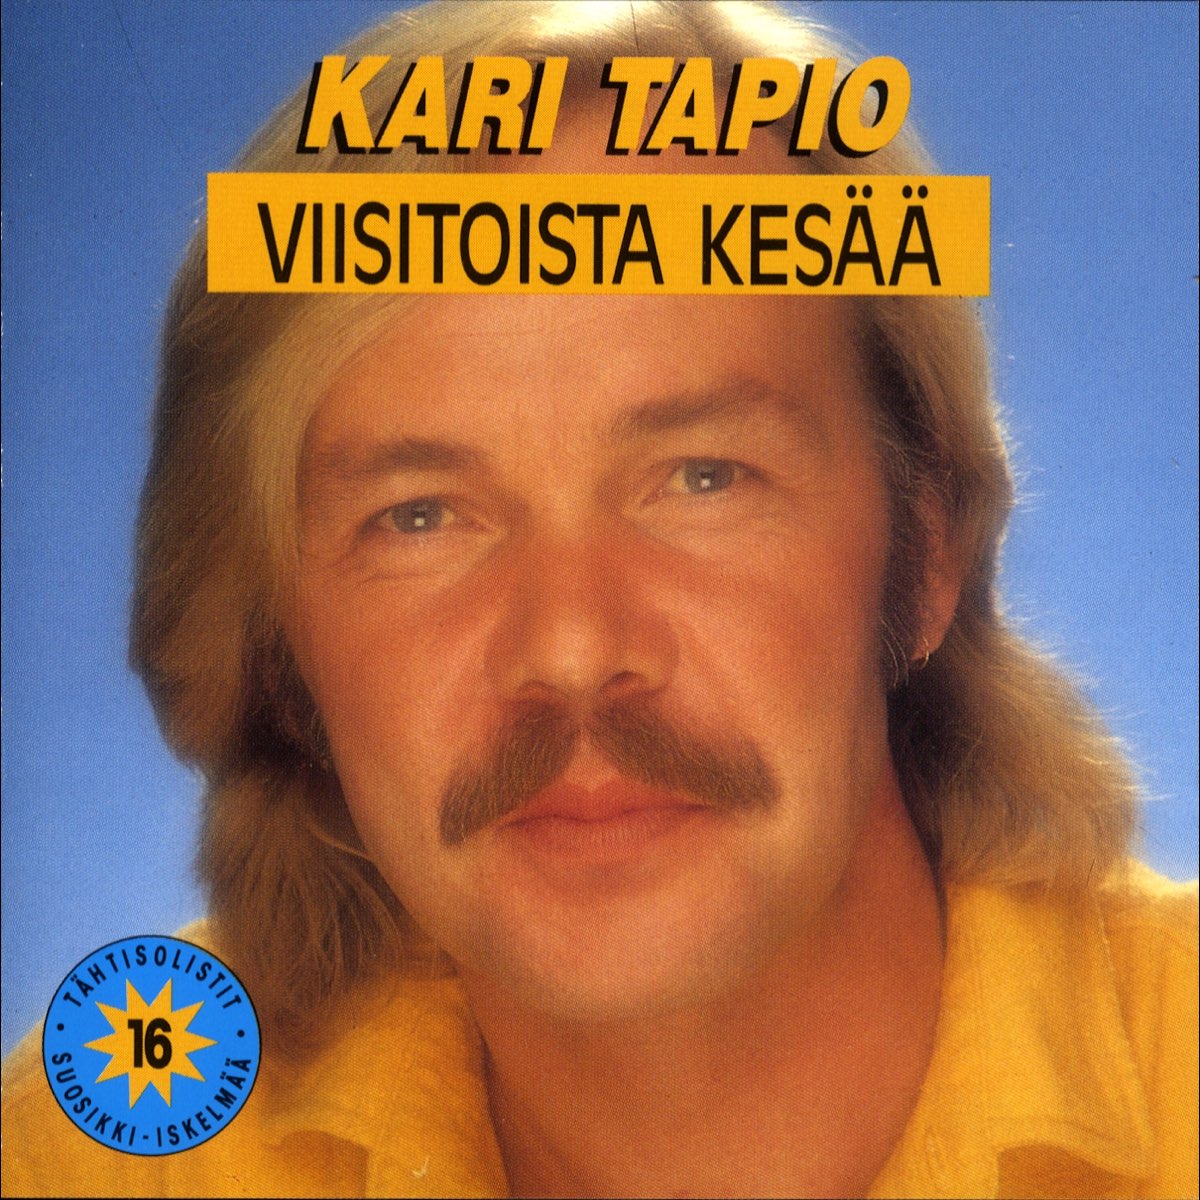 Viisitoista kesää de Kari Tapio en Apple Music